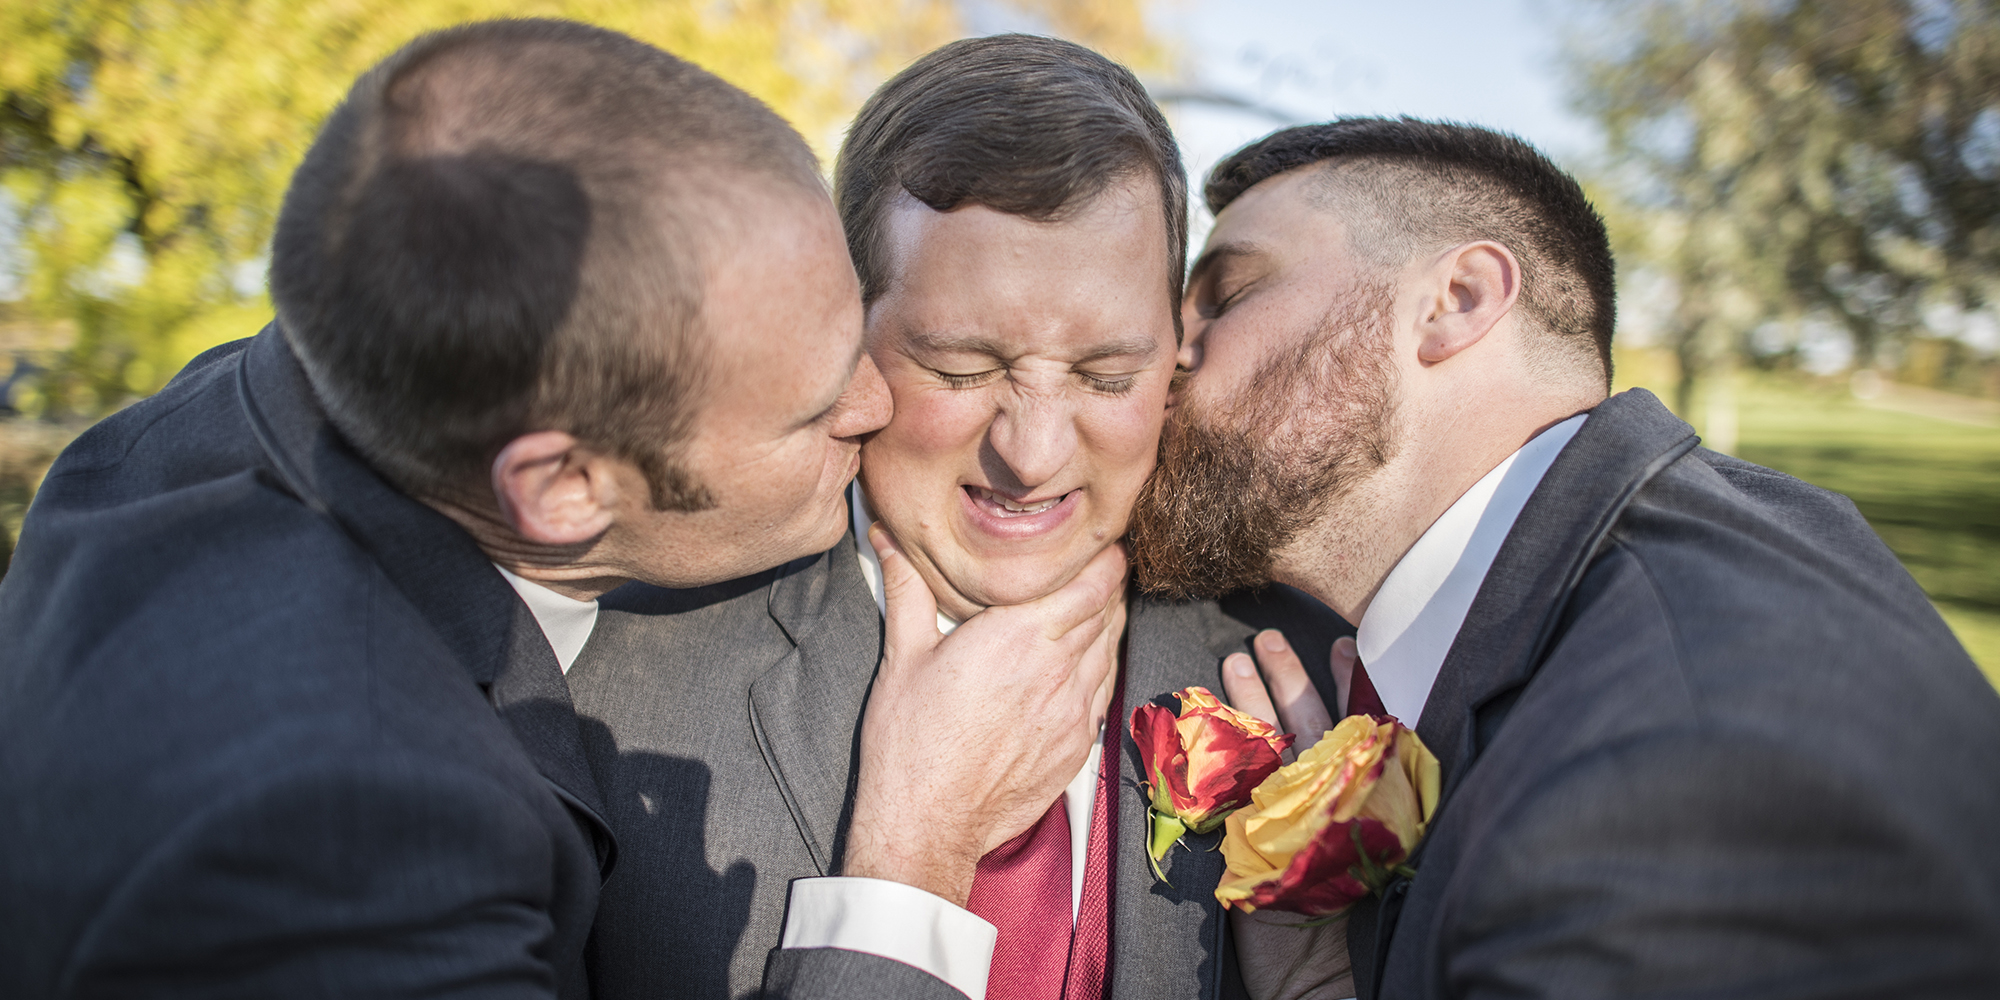 groomsmen kiss groom